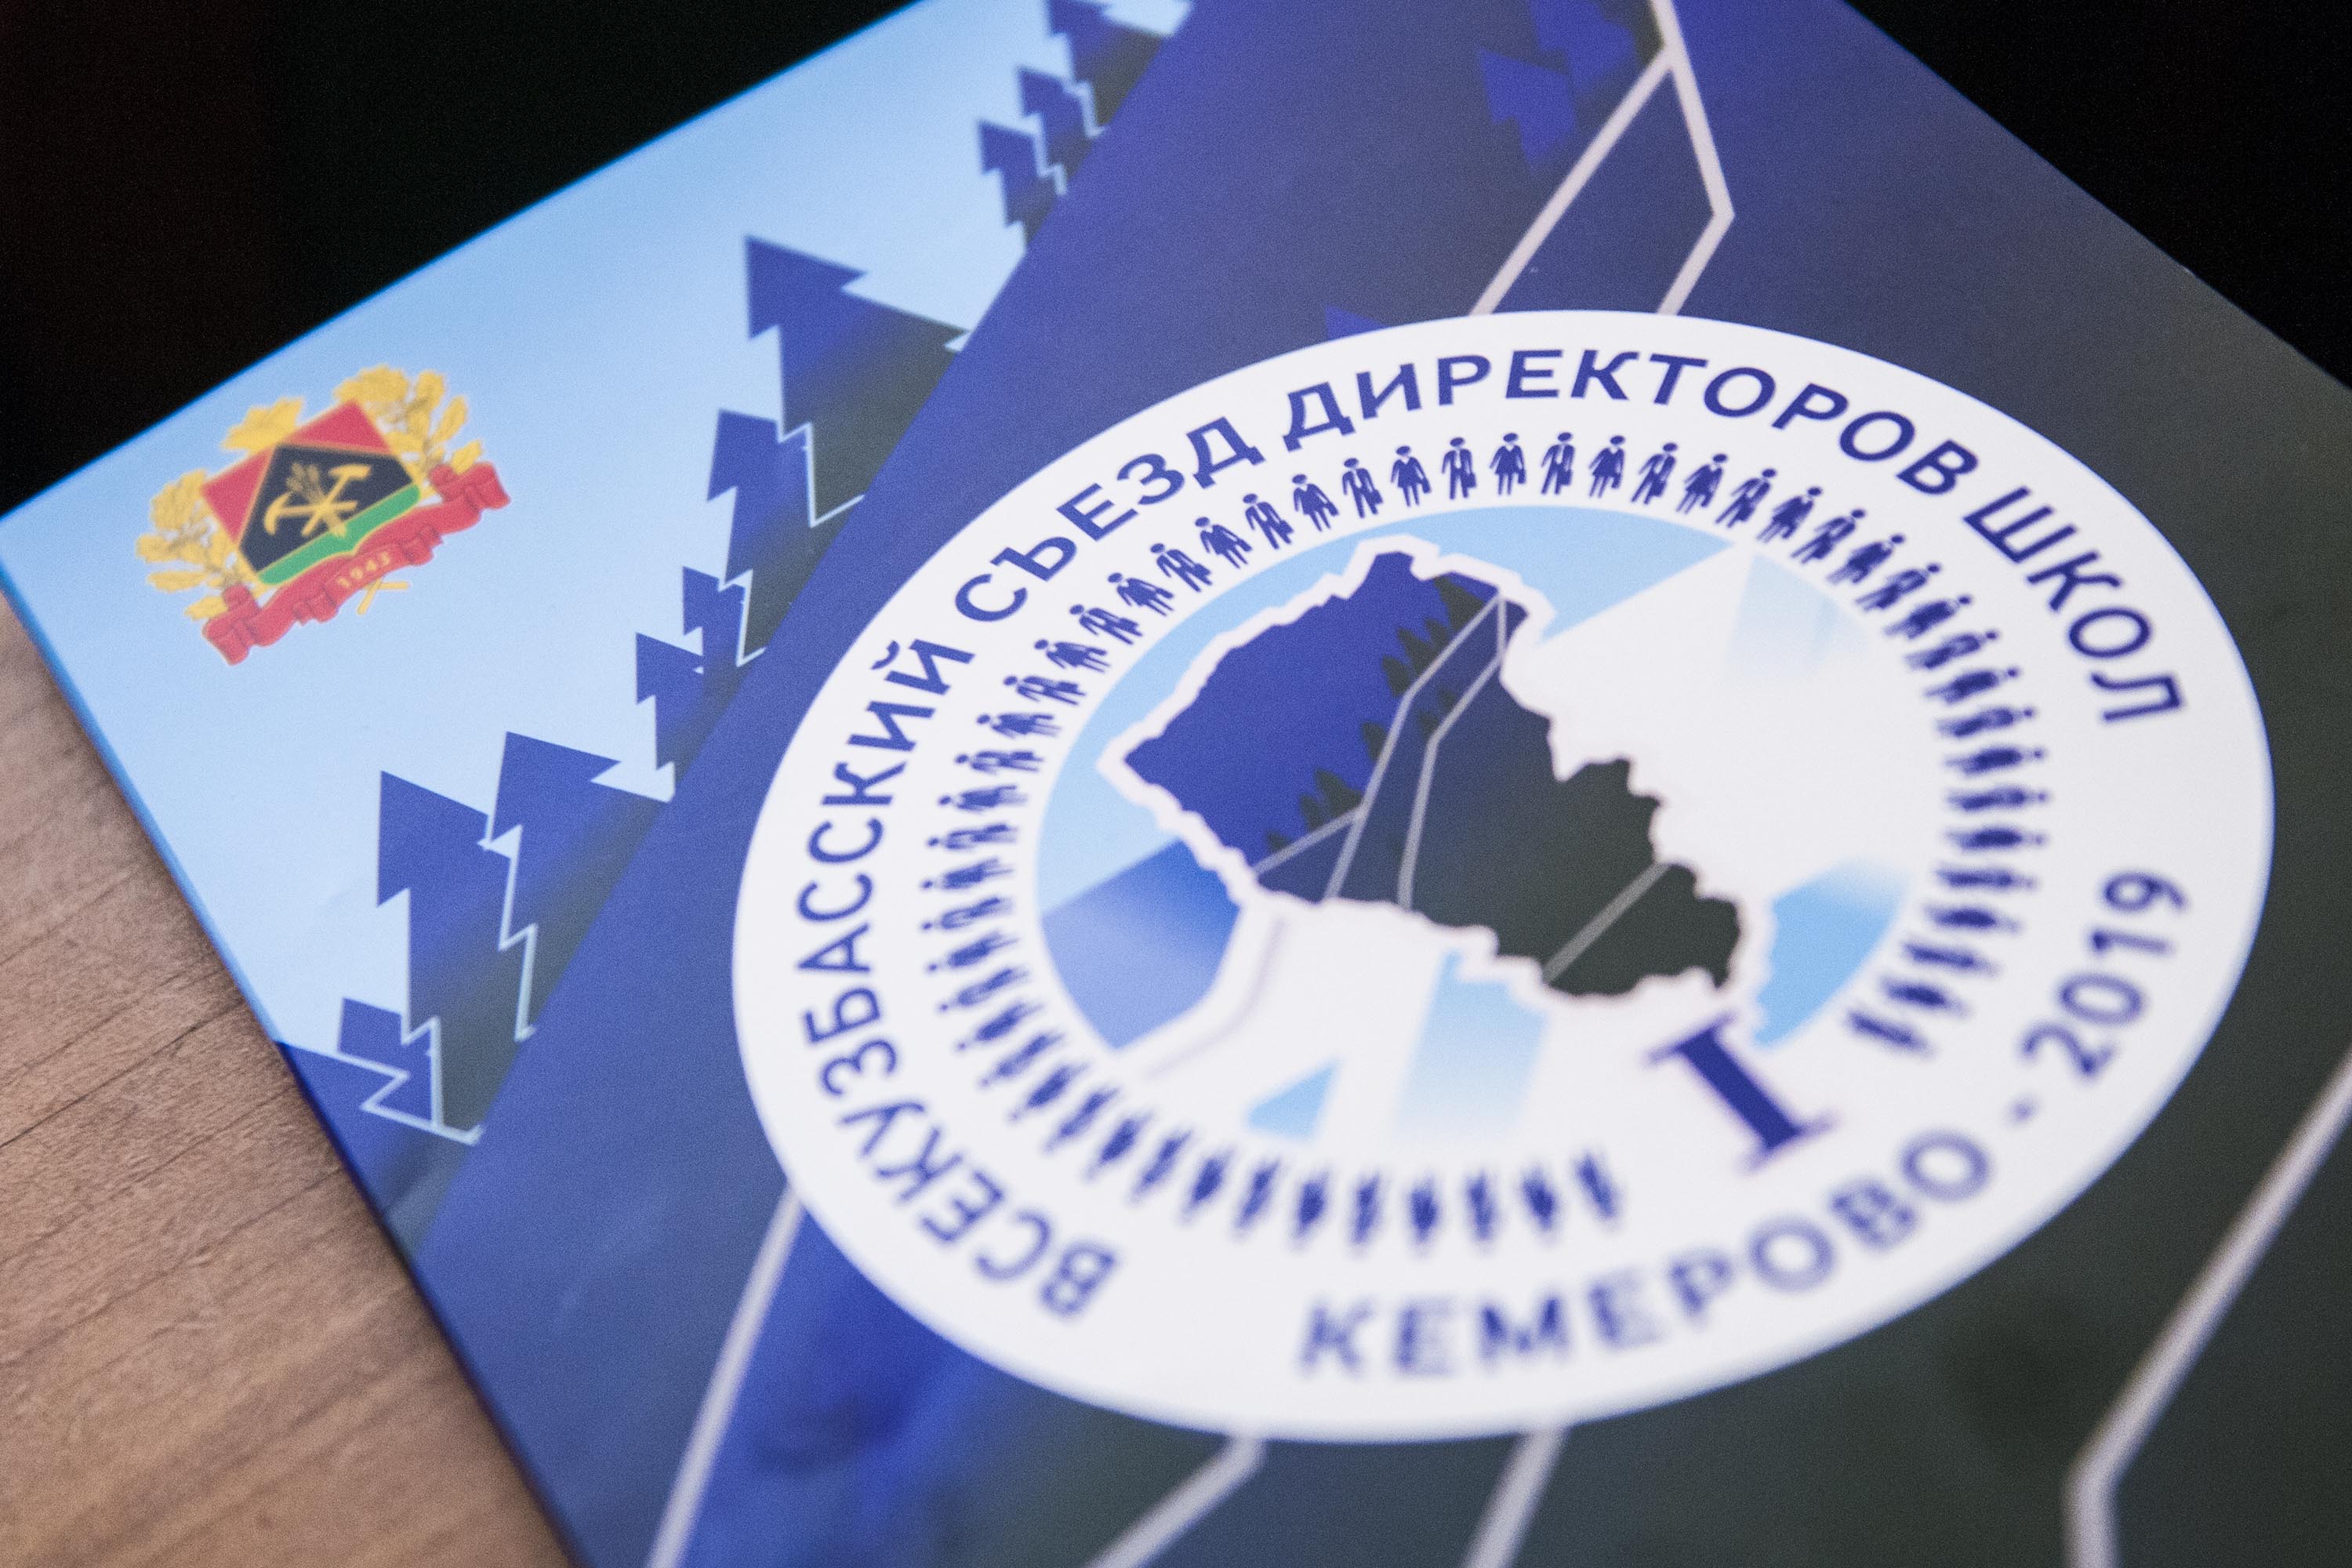 Продолжается регистрация на II Всекузбасский съезд директоров школ, который пройдет в онлайн-режиме 27-28 мая 